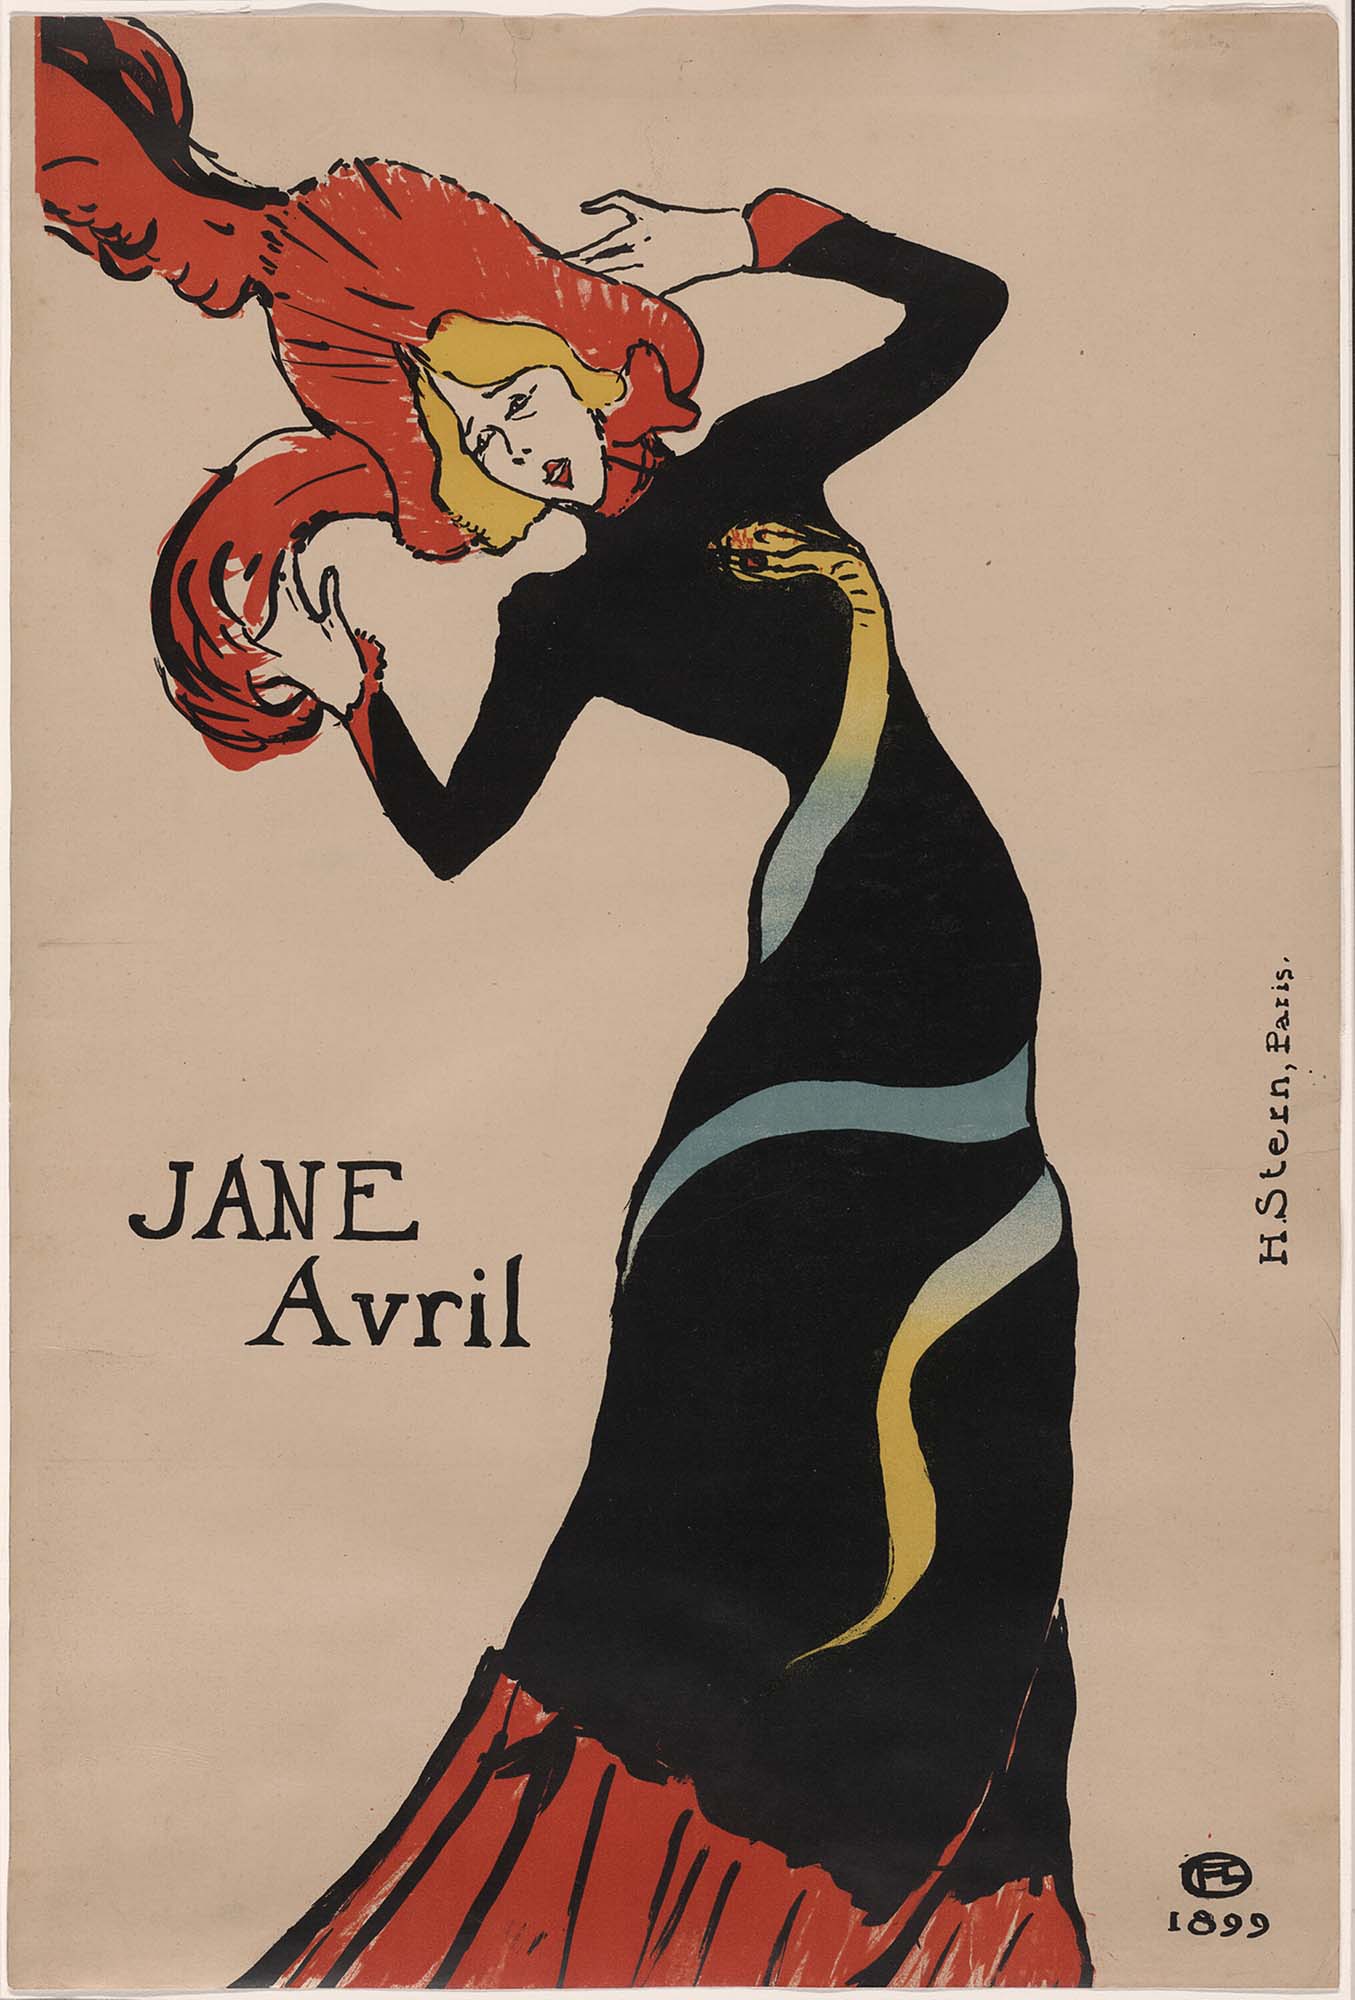 The original Jane Avril by Henri de Toulouse-Lautrec